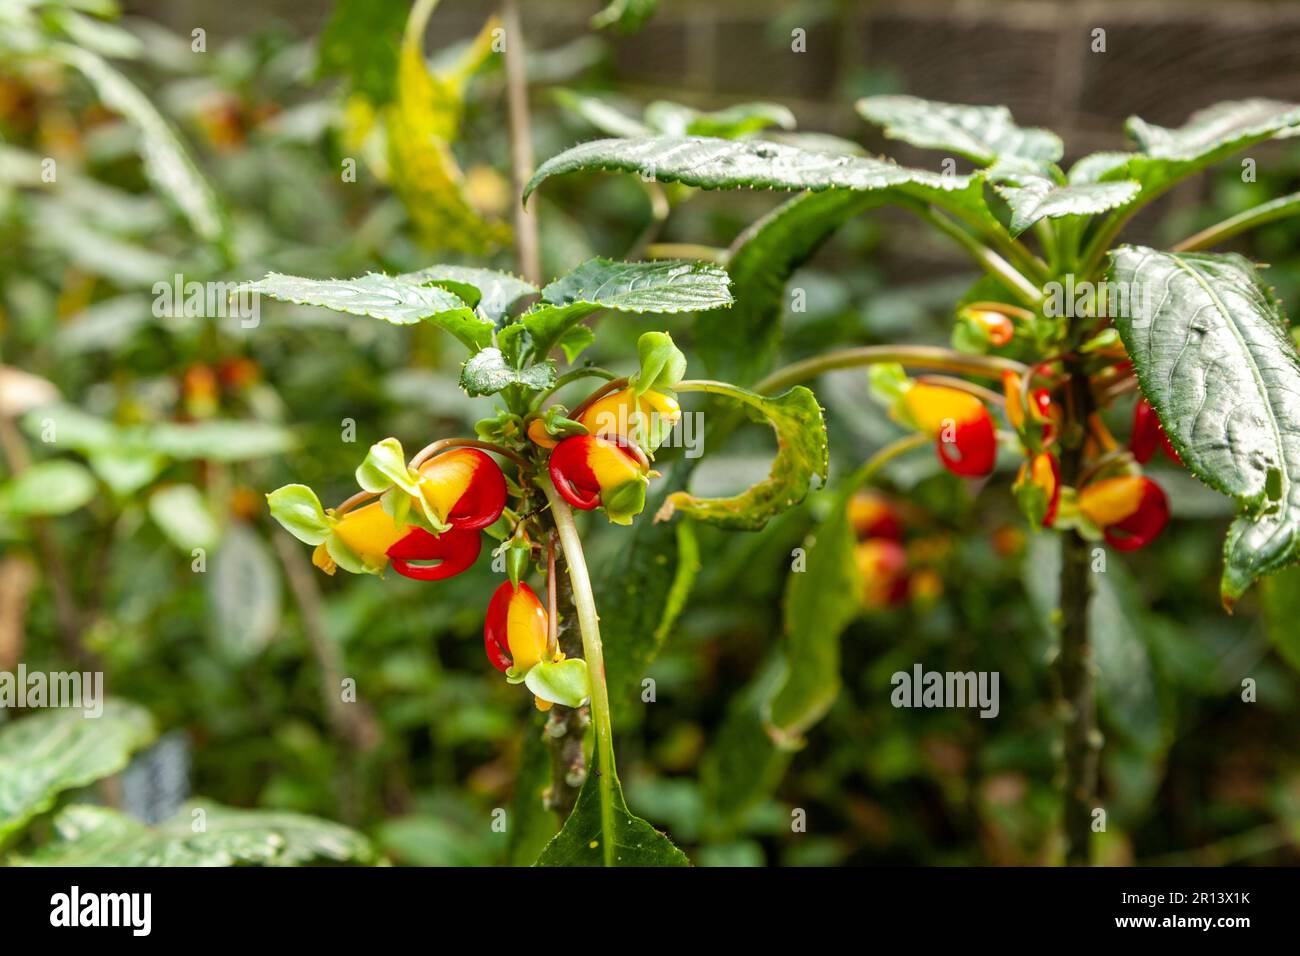 Impatiens niamniamensis, nome comune Congo cockatoo, pappagallo impatiens o semplicemente pappagallo pianta, è una specie di pianta fiorita della famiglia Balsaminac Foto Stock